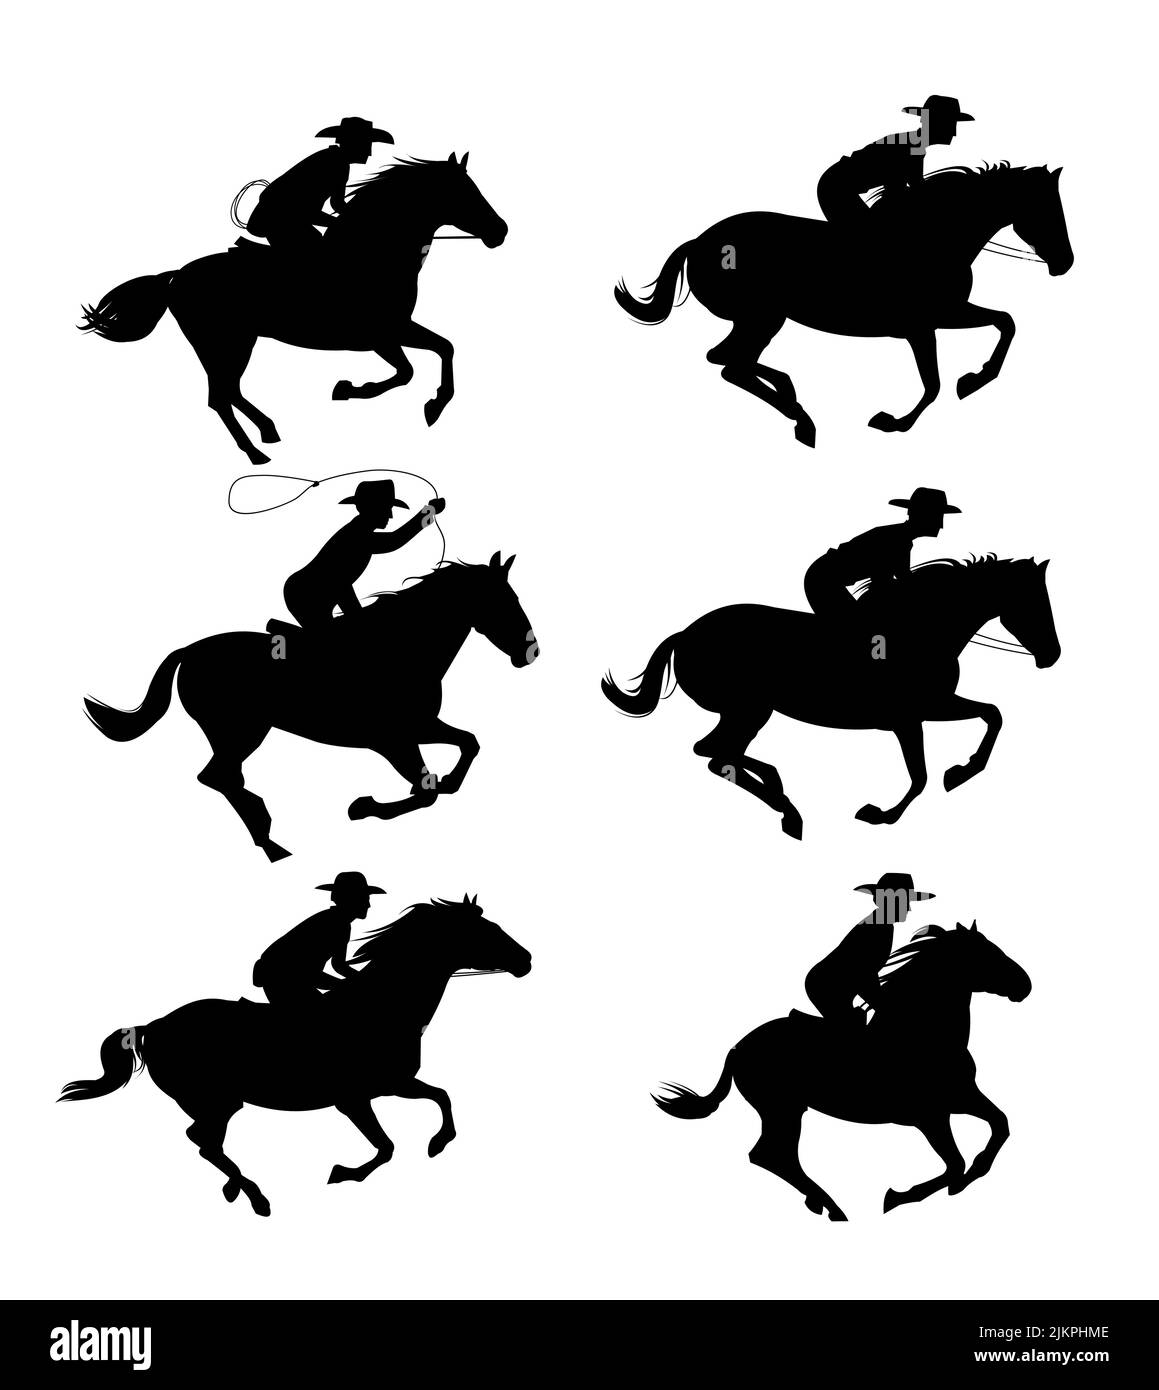 Ein Set Cowboys reitet auf Pferden. Bildsilhouette. Reiter auf dem Pferderücken. Isoliert auf weißem Hintergrund. Vektor Stock Vektor